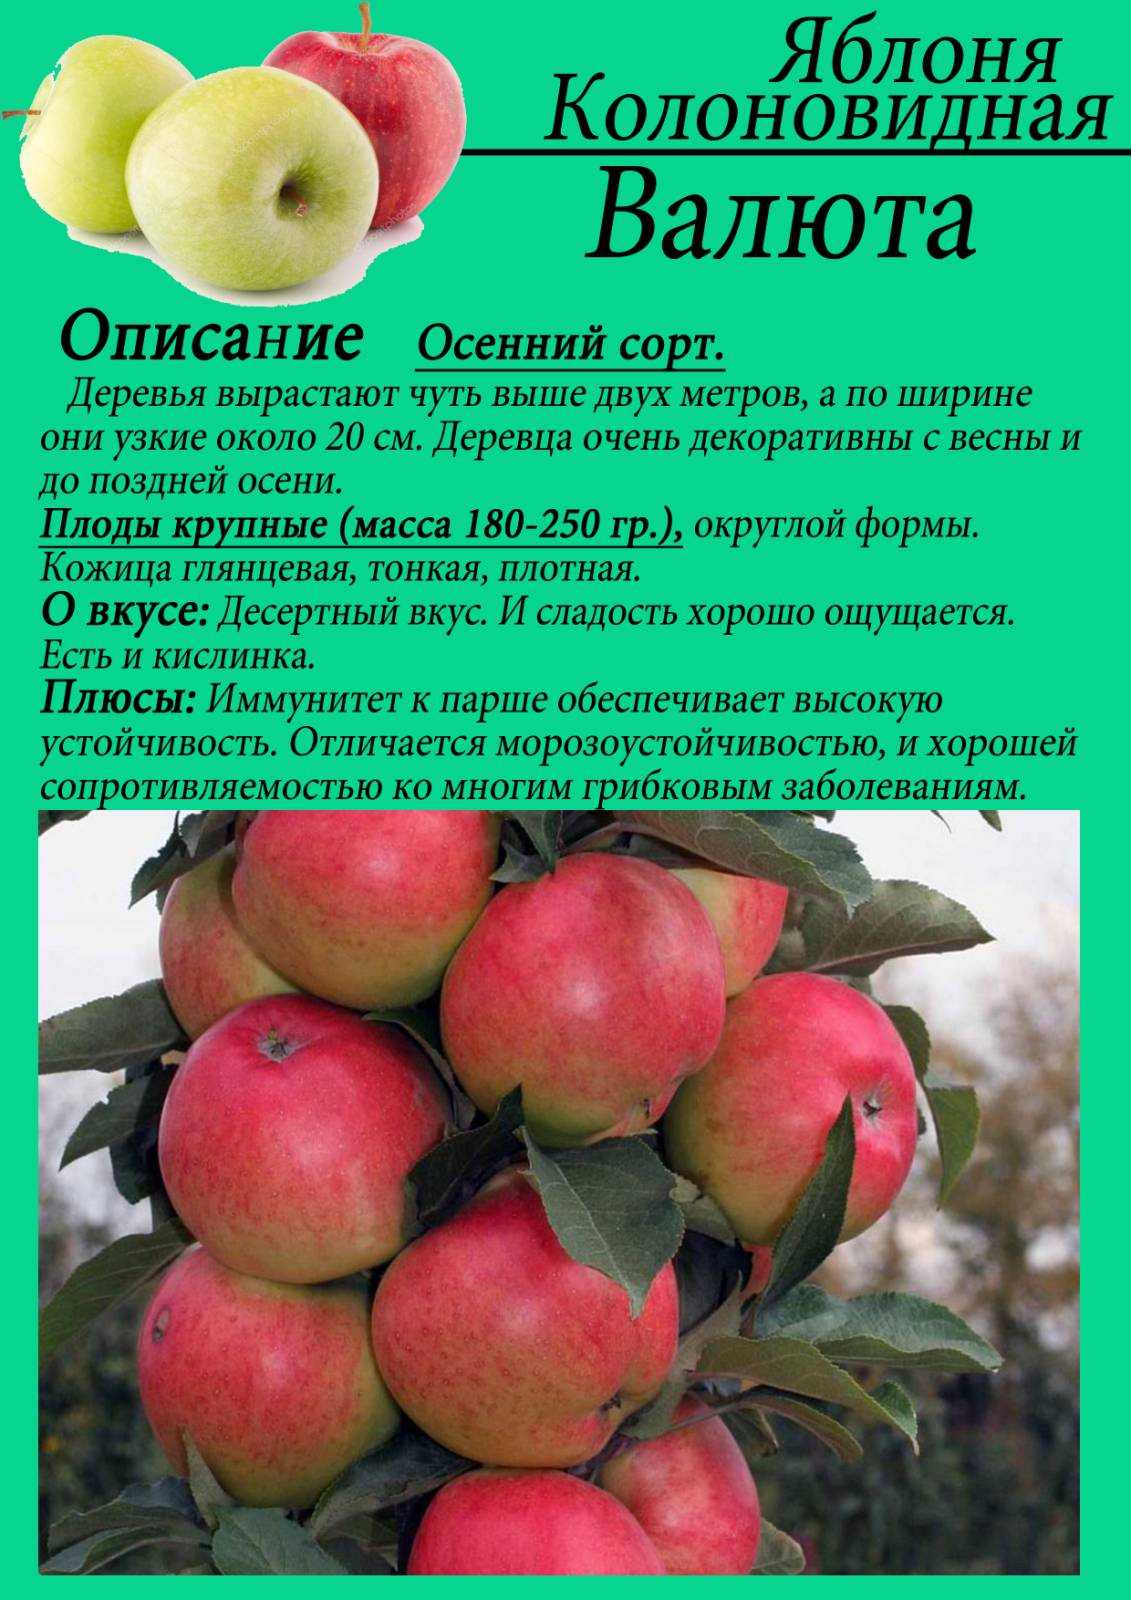 ᐉ колоновидная яблоня медок описание фото отзывы - zooshop-76.ru